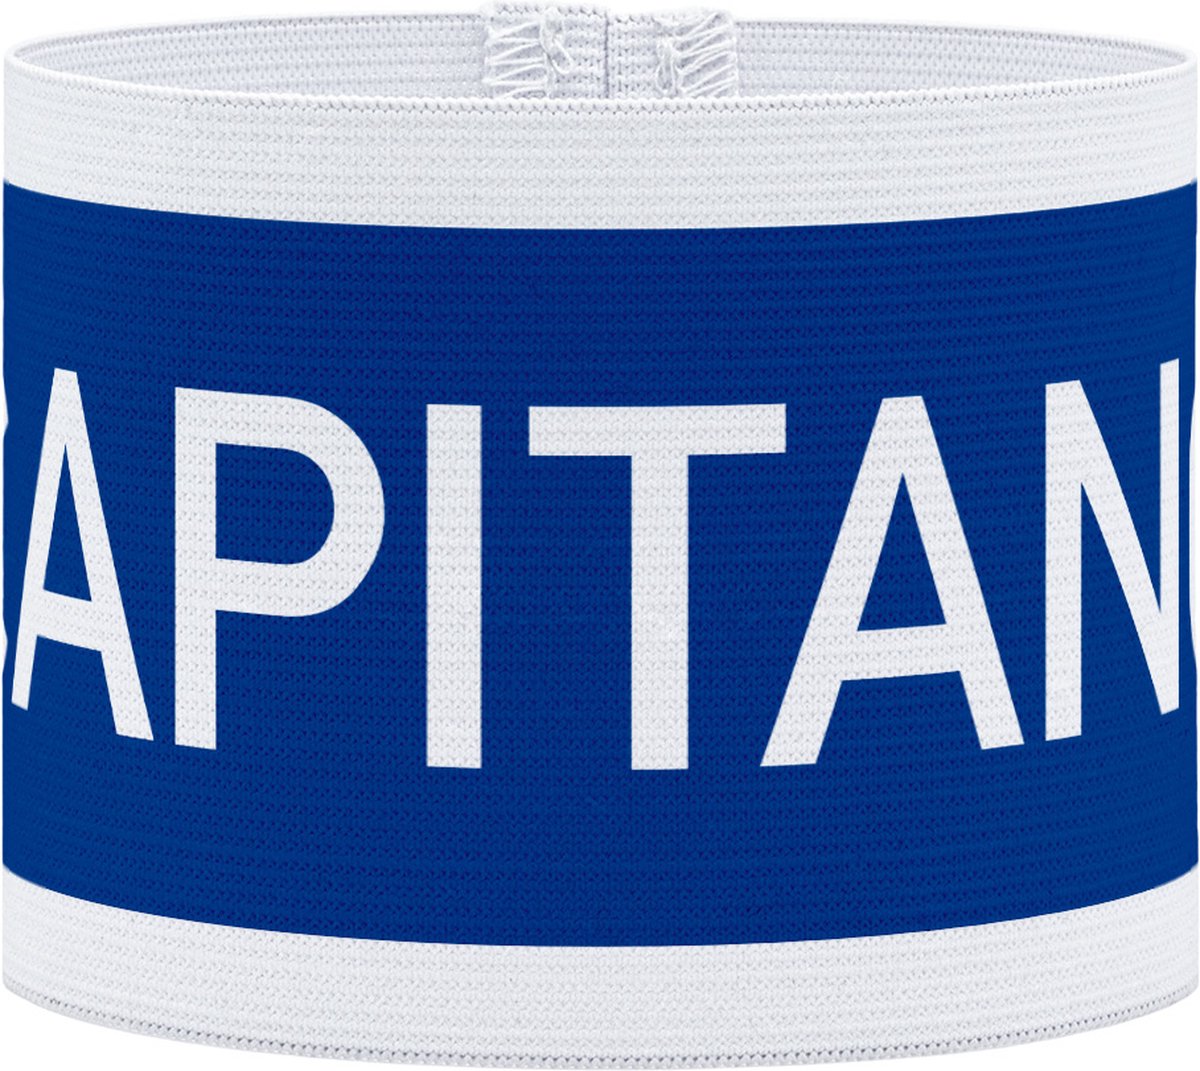 Aanvoerdersband - Captain - Blauw / Wit - S